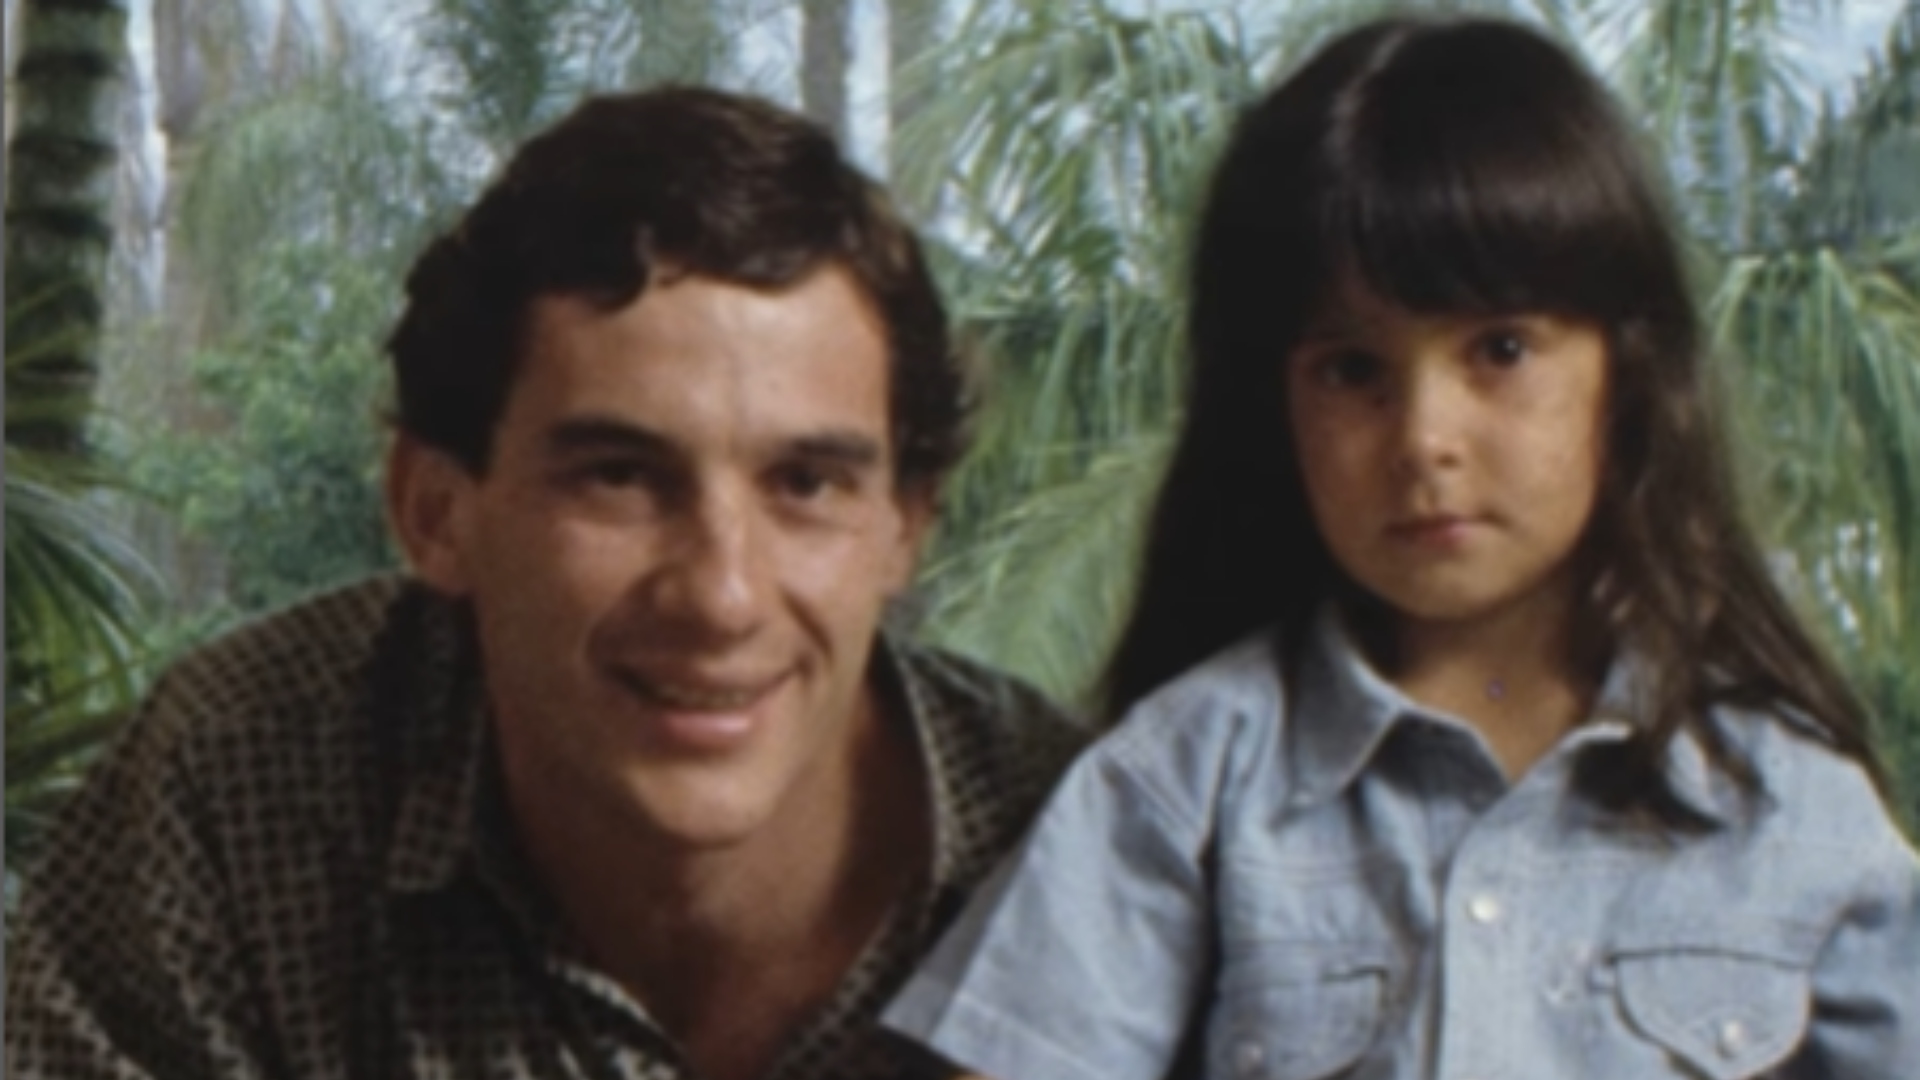 Sobrinha de Ayrton Senna resgata memórias da infância com o piloto: 'Brincalhão' - Foto: Acervo Pessoal